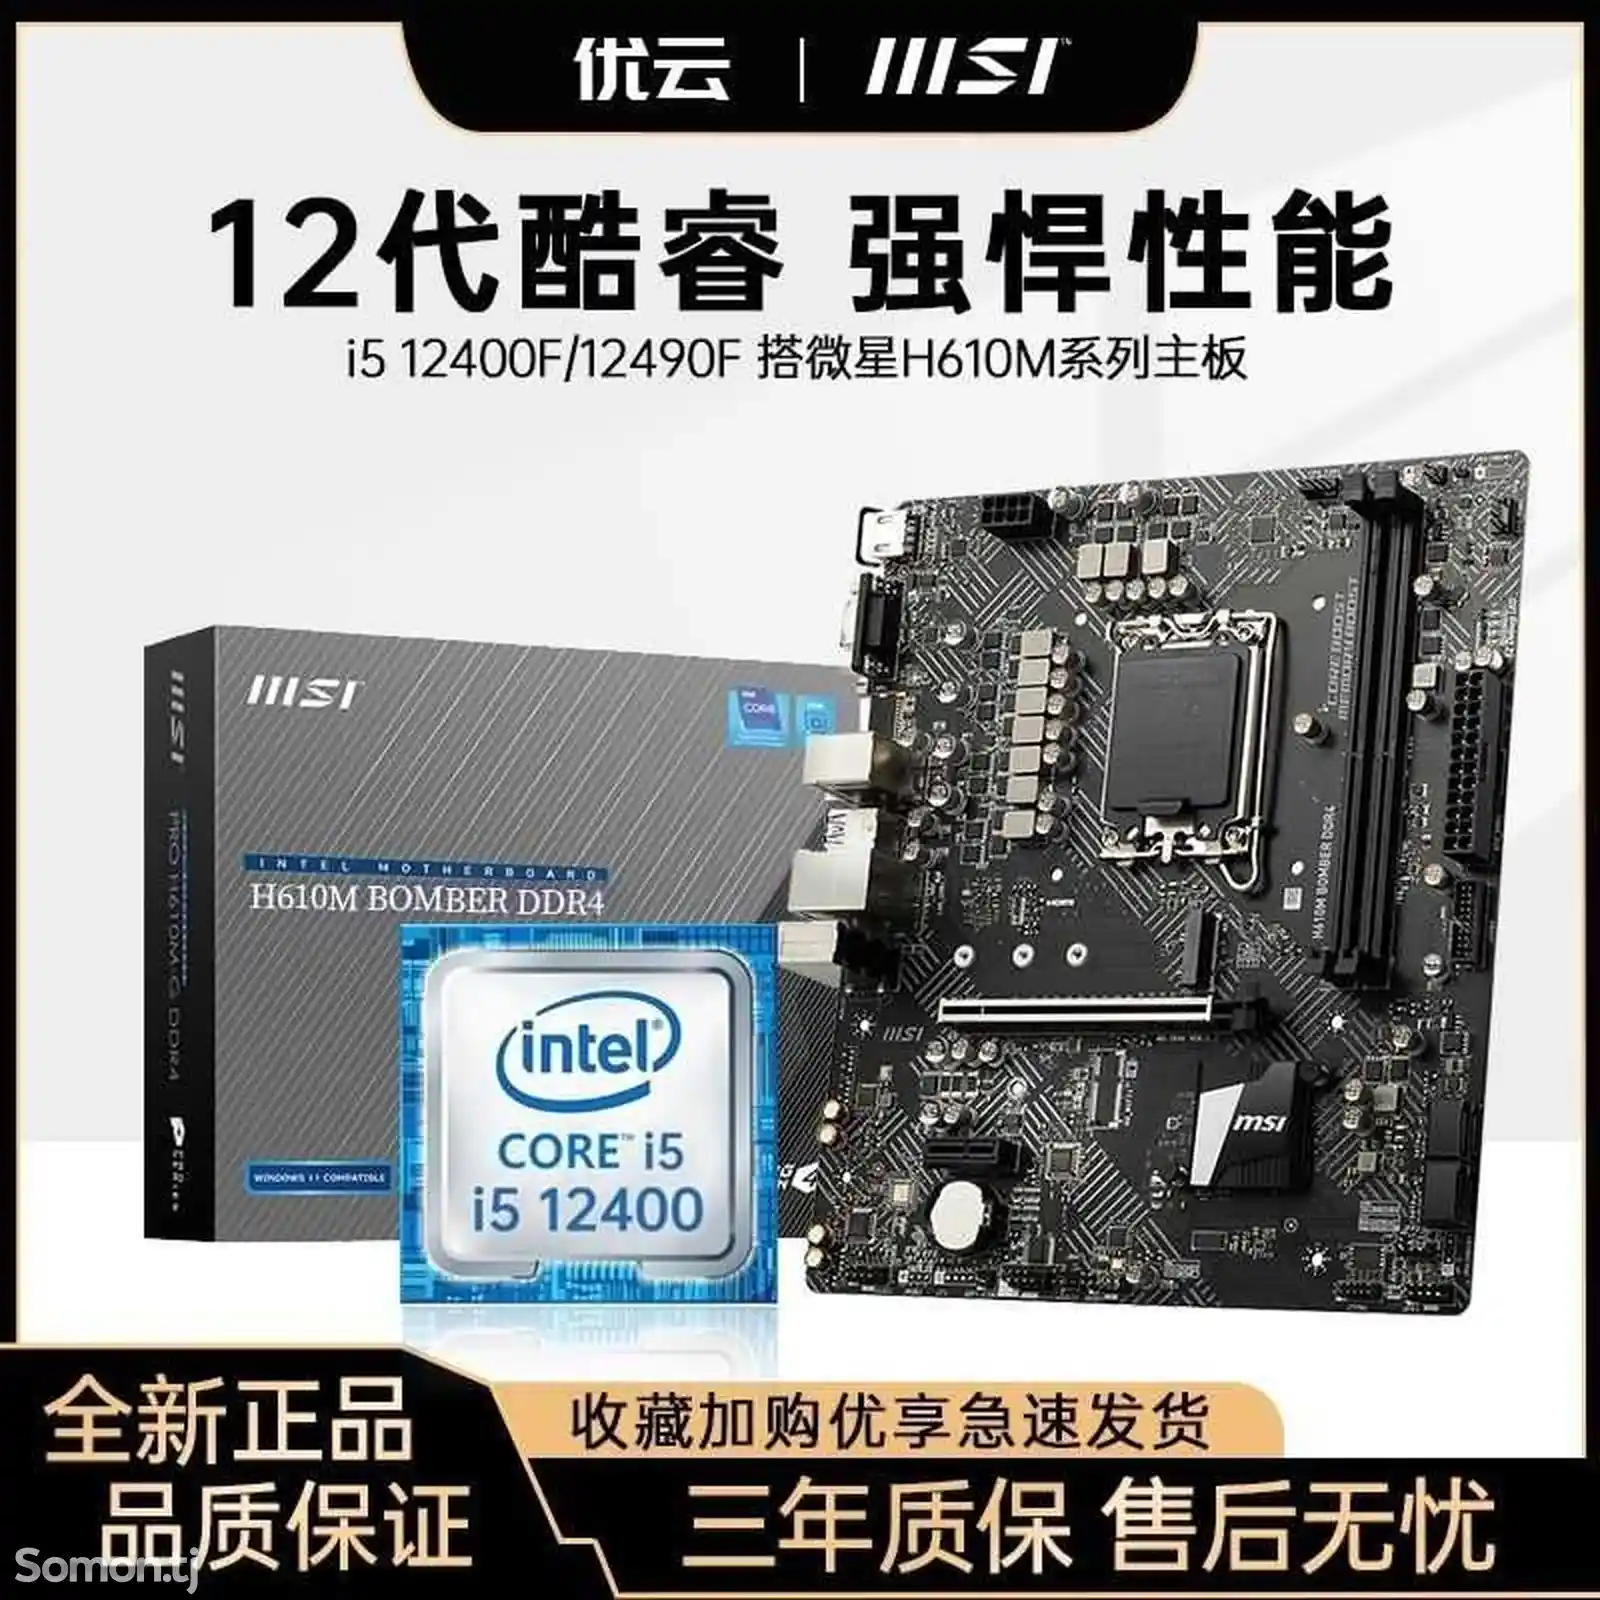 Материнская плата MSI h610M ddr4 + процессор intel Core i5 12400f на заказ